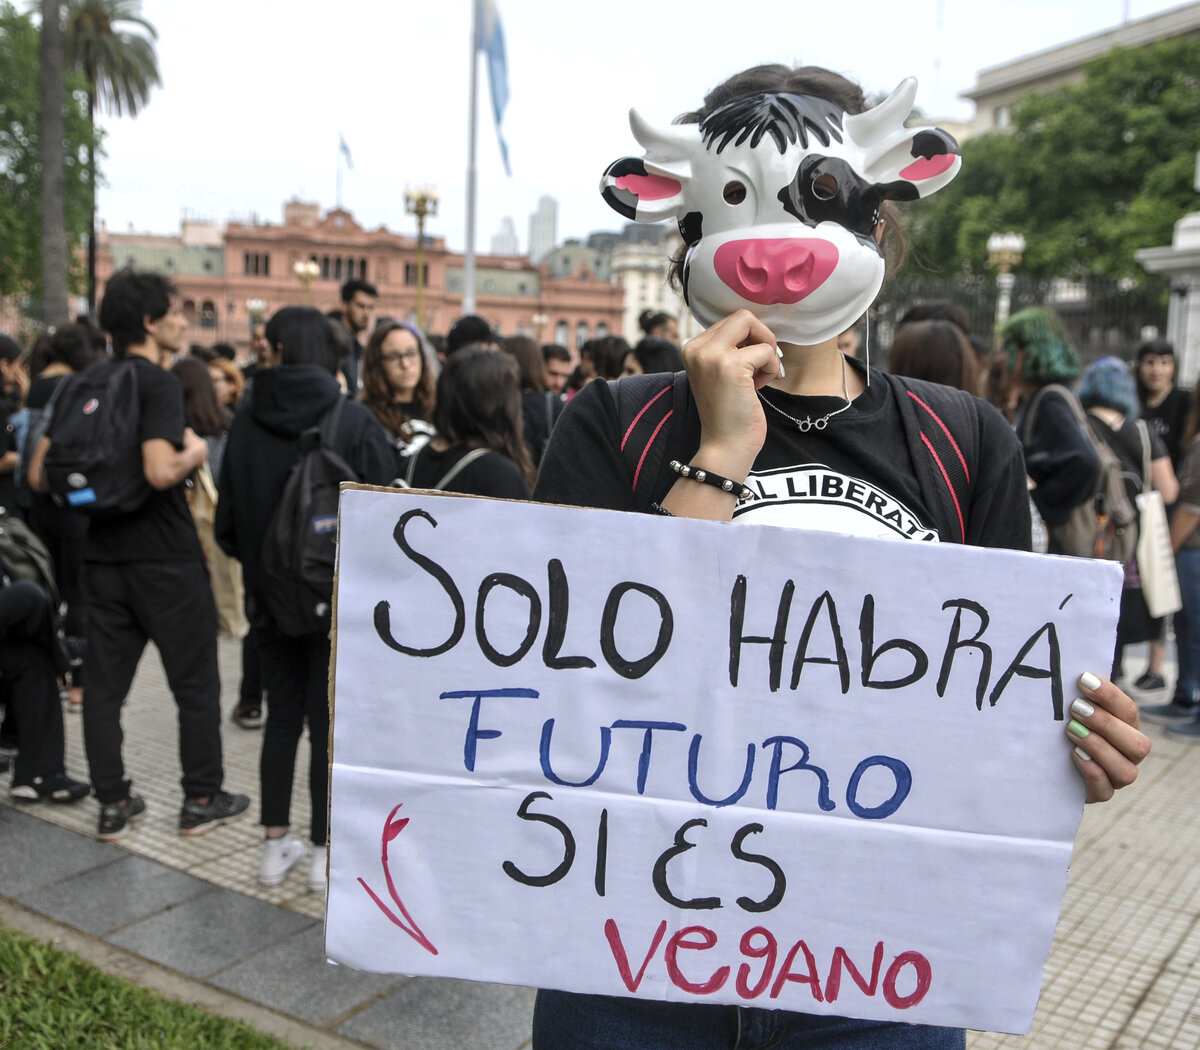 Veganismo: una marcha por la liberación animal | Organizaciones veganas marcharon de Plaza de Mayo al Congreso | Página12